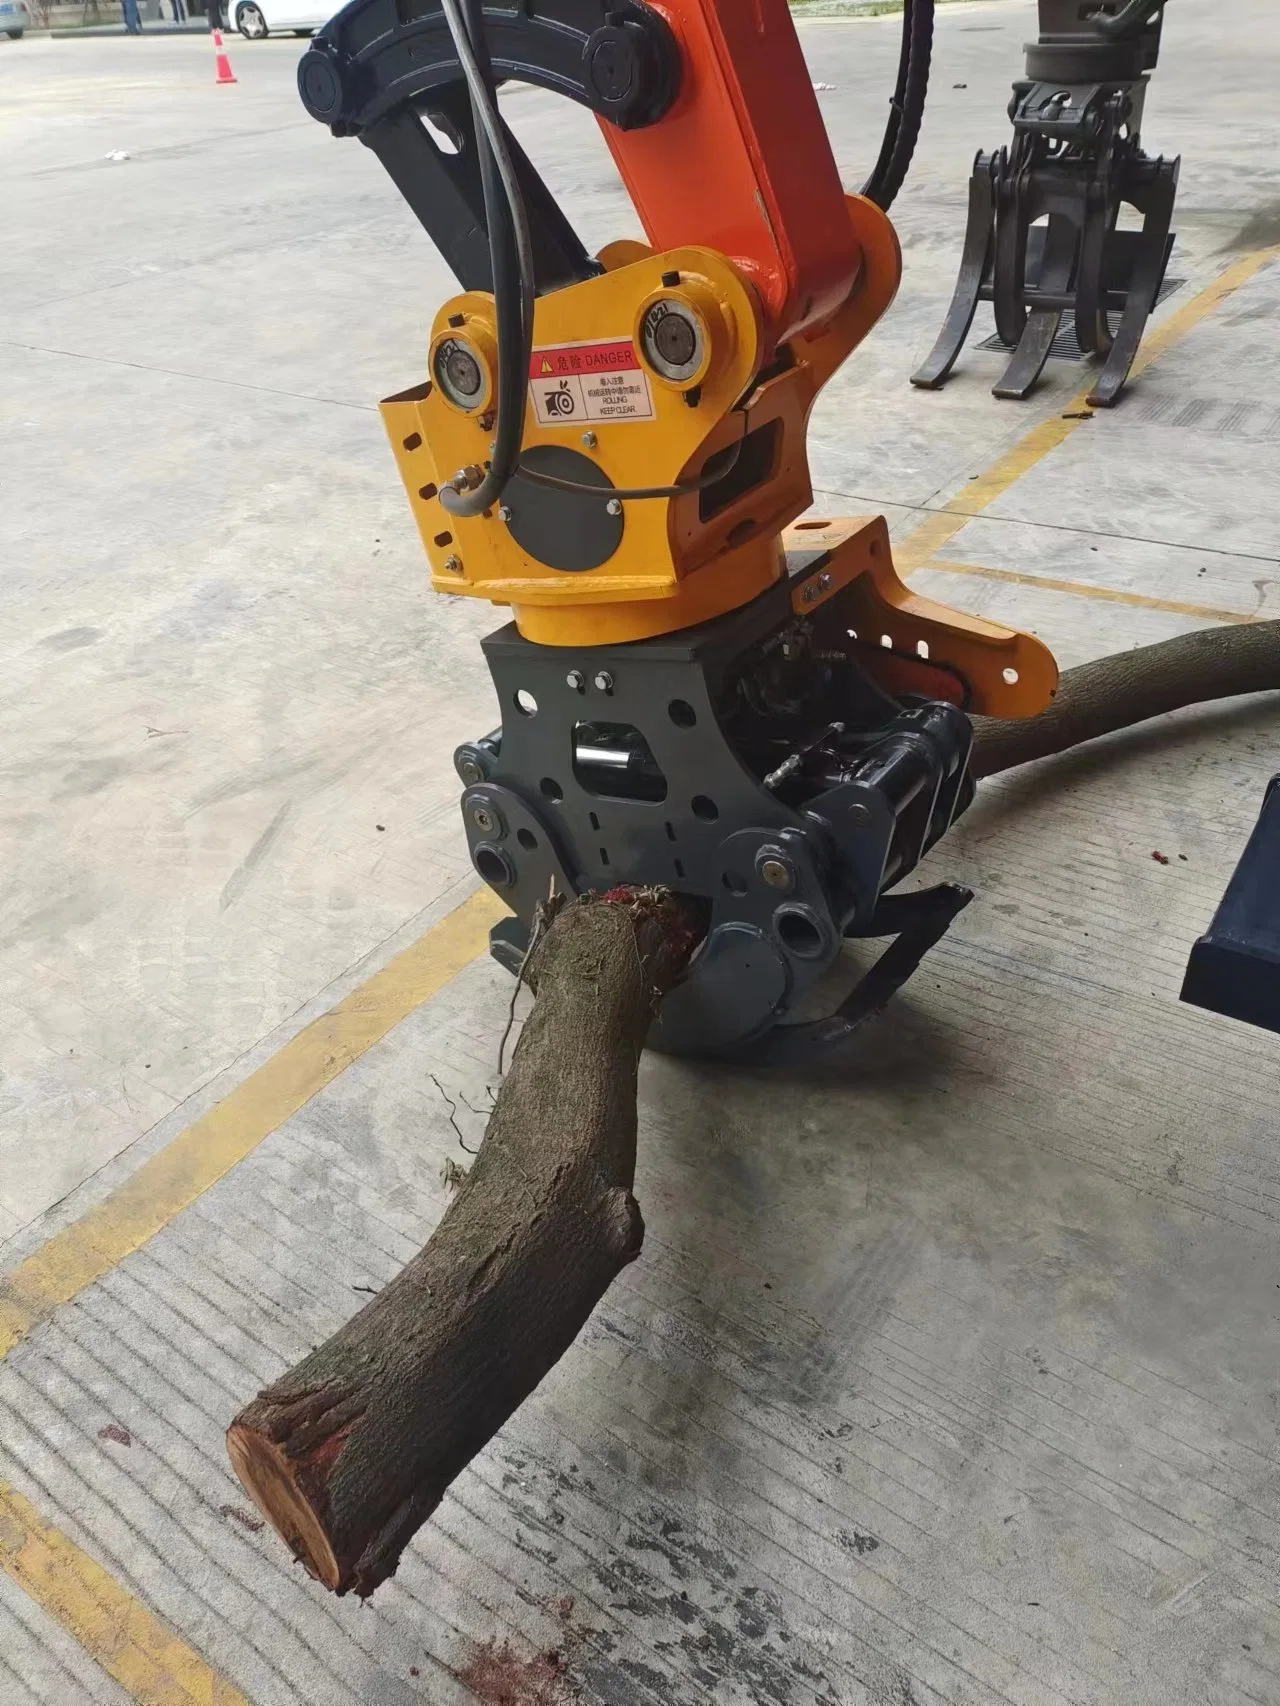 Ускорите обработку древесины гидравлические грейферные пилы JG Устанавливается на экскаваторный станок